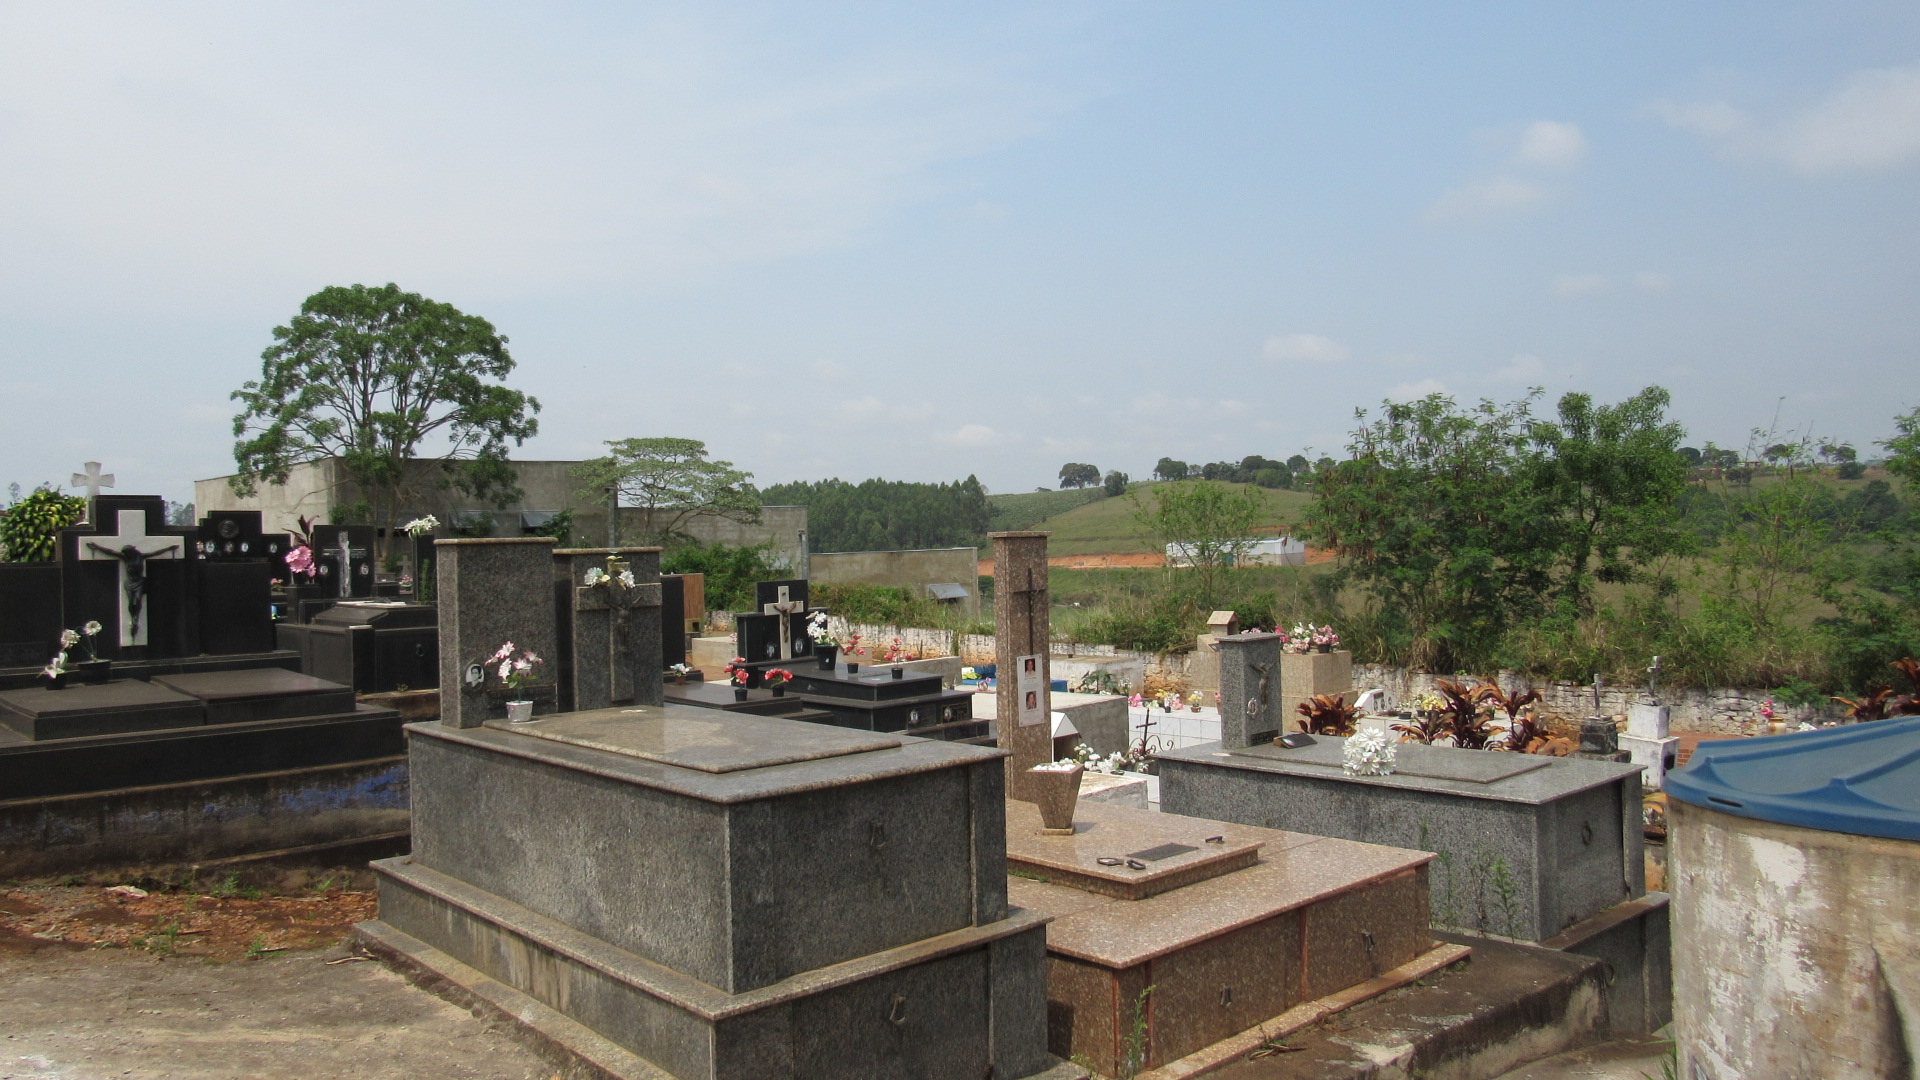 Cemitério do distrito de Juréia em Monte Belo MG será ampliado com investimento de 200 mil reais